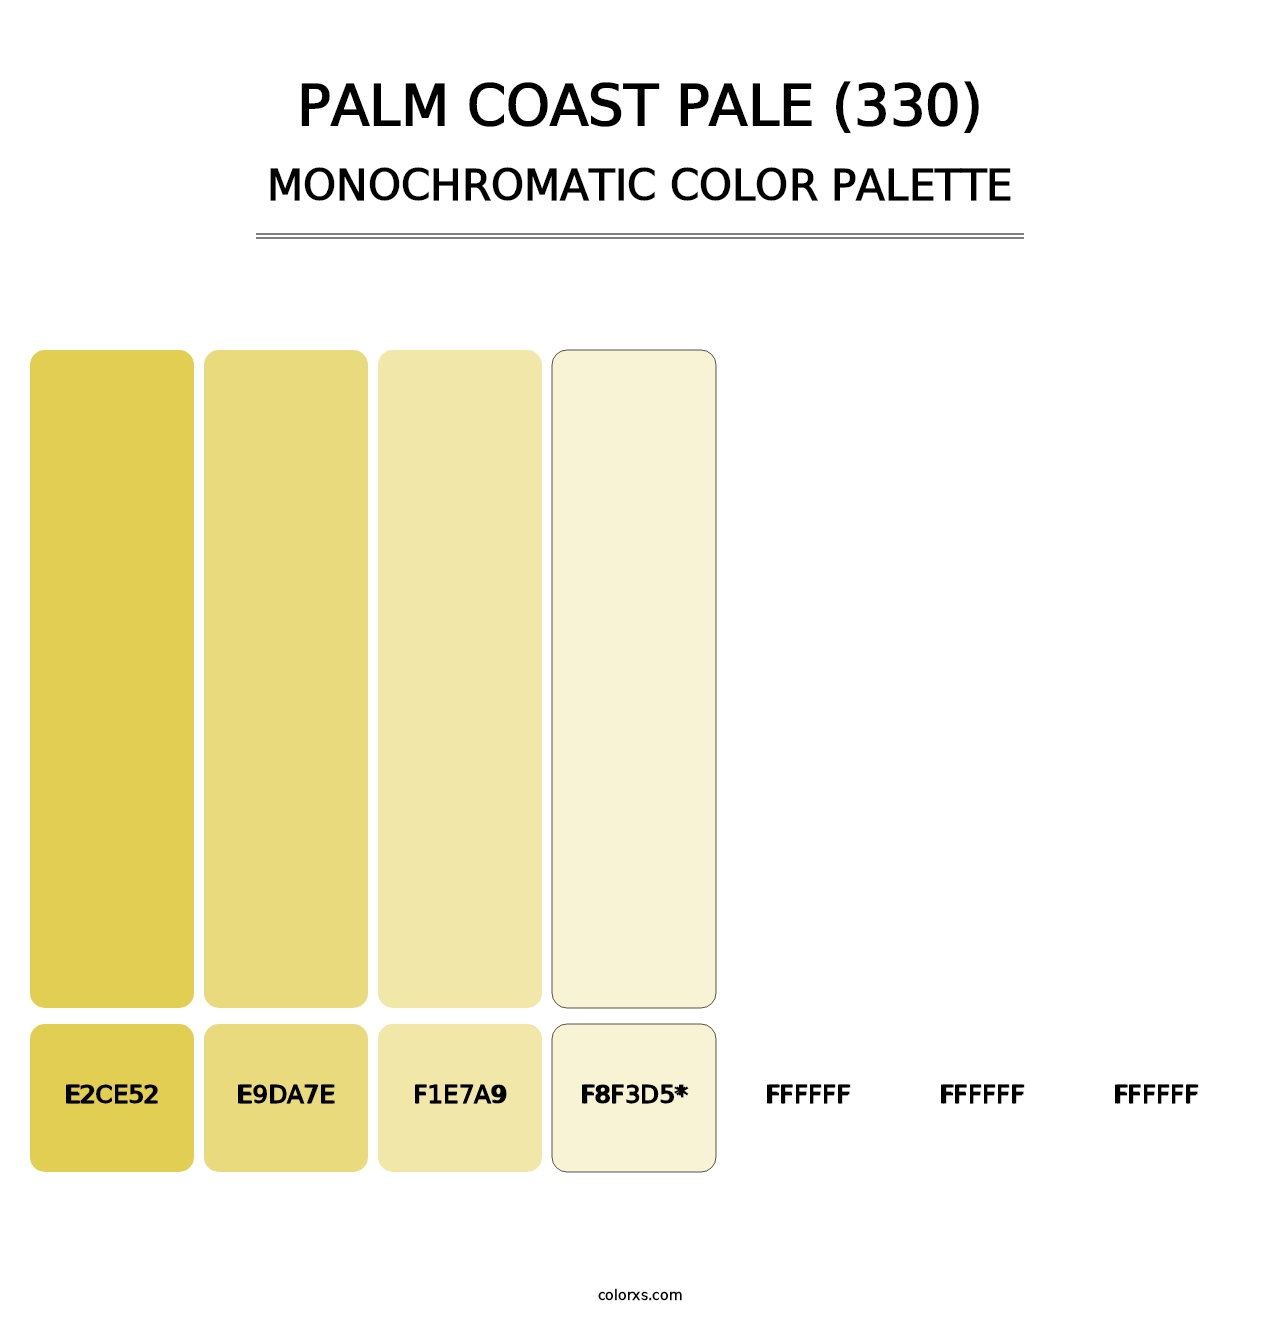 Palm Coast Pale (330) - Monochromatic Color Palette